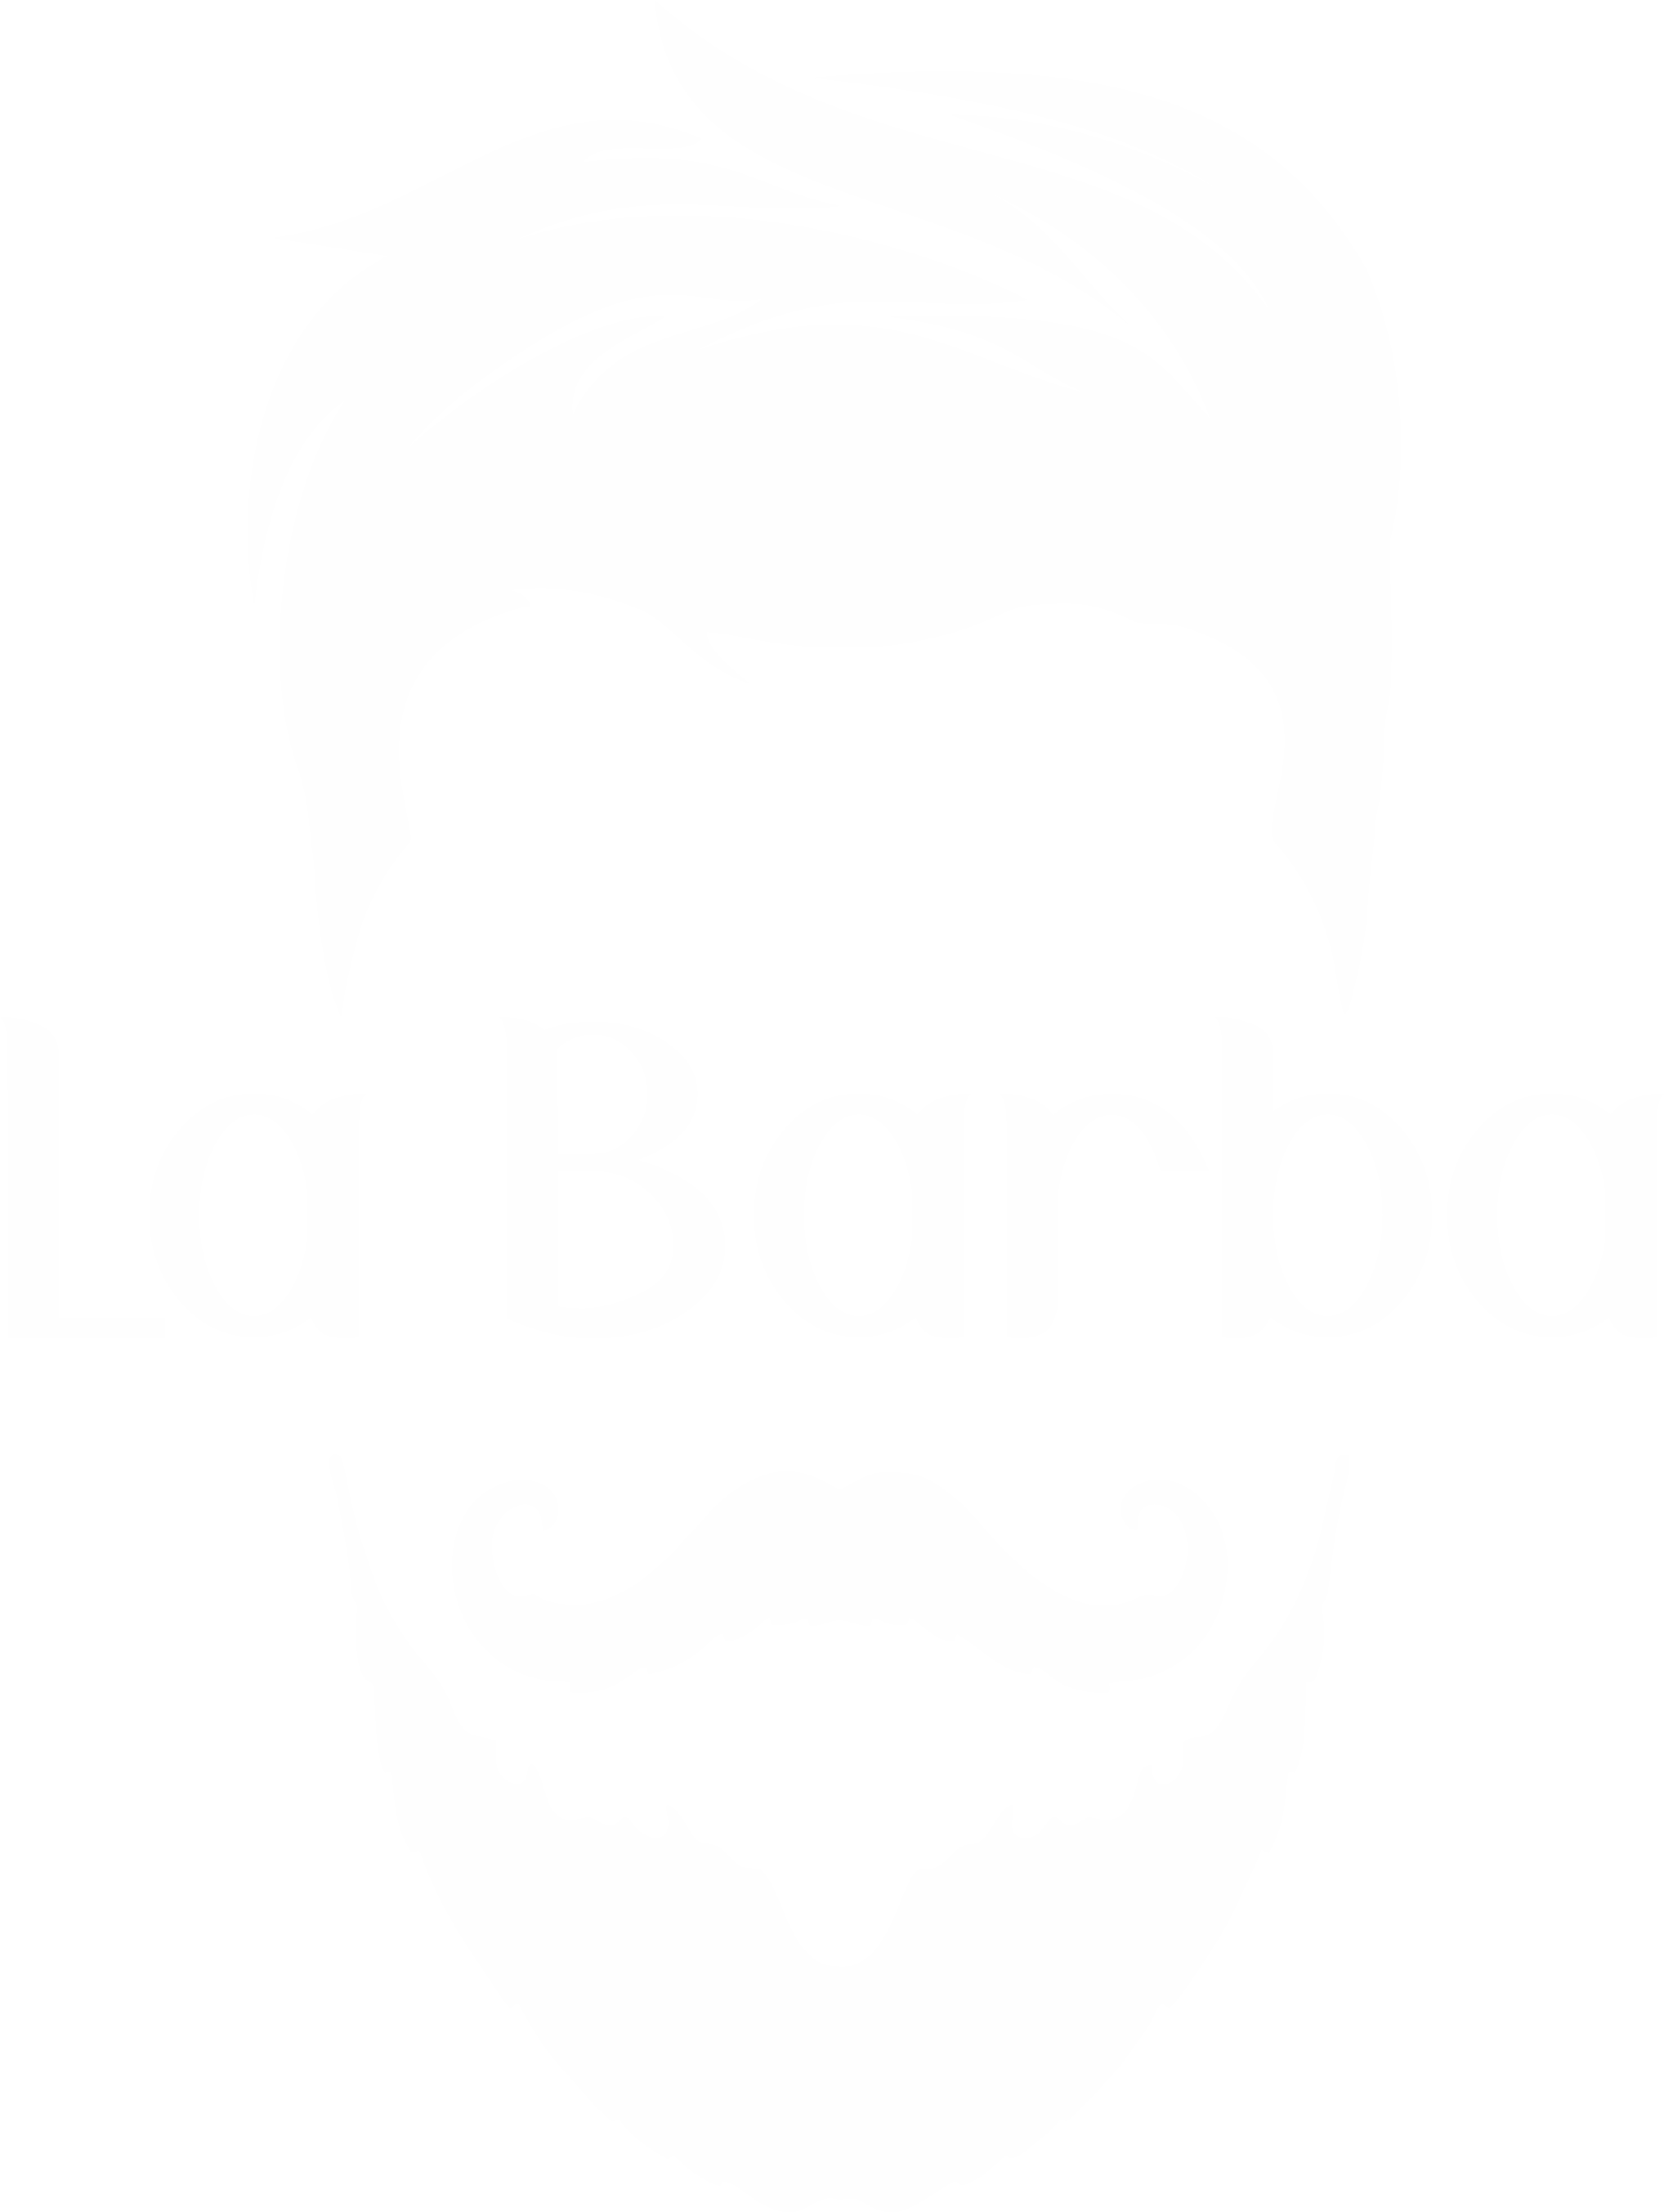 La Barba Canoas